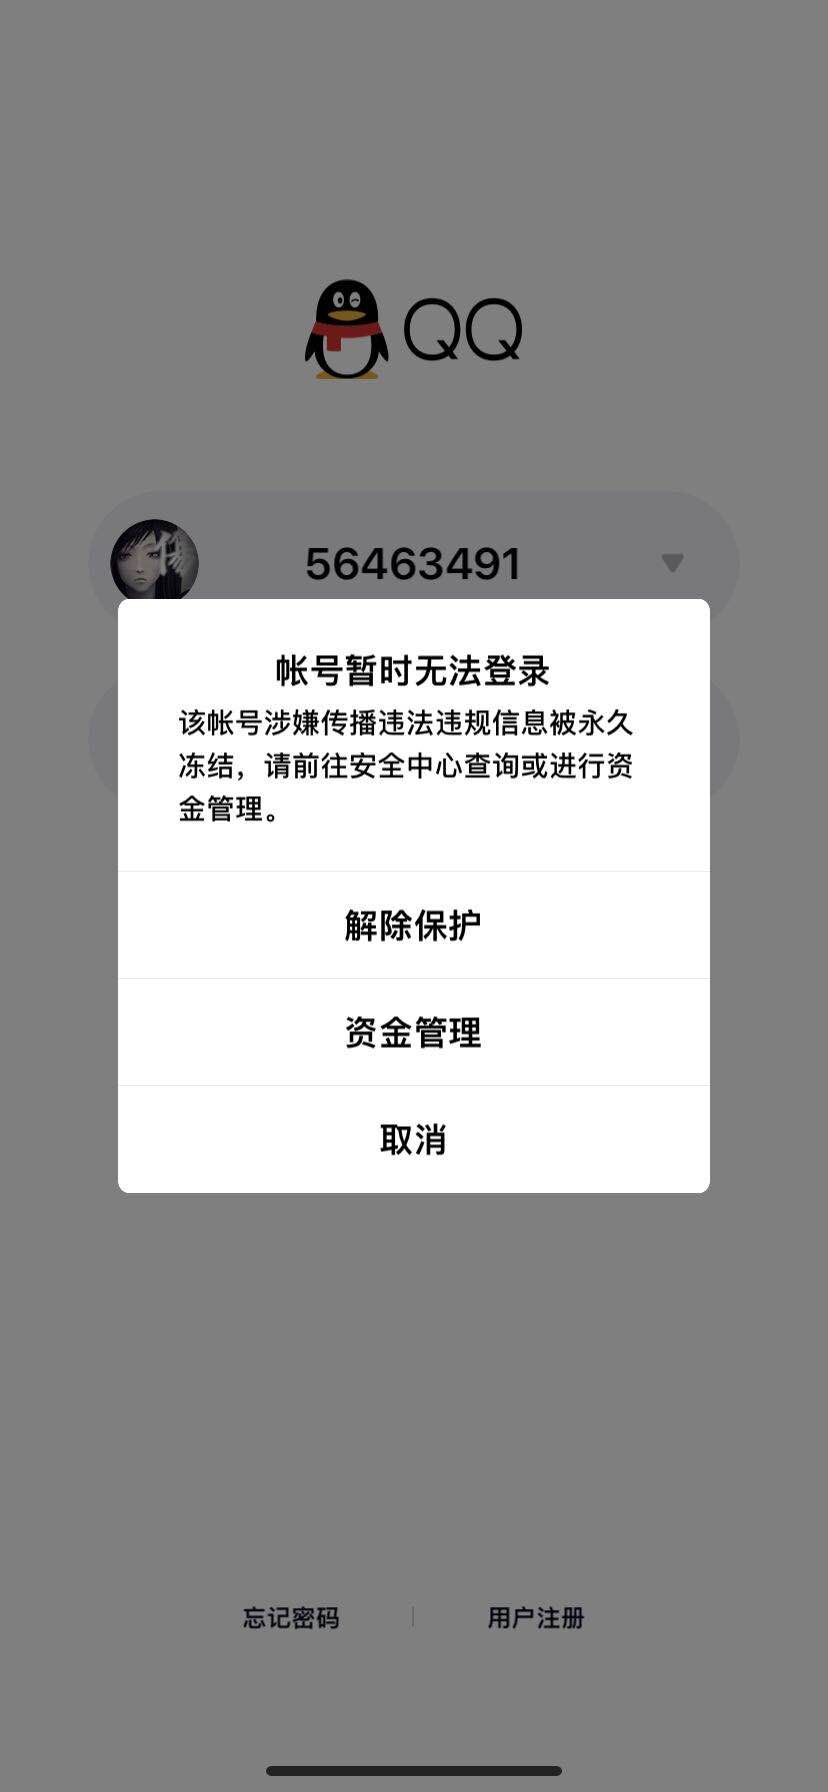 深圳市腾讯计算机系统有限公司解封qq账号56463491